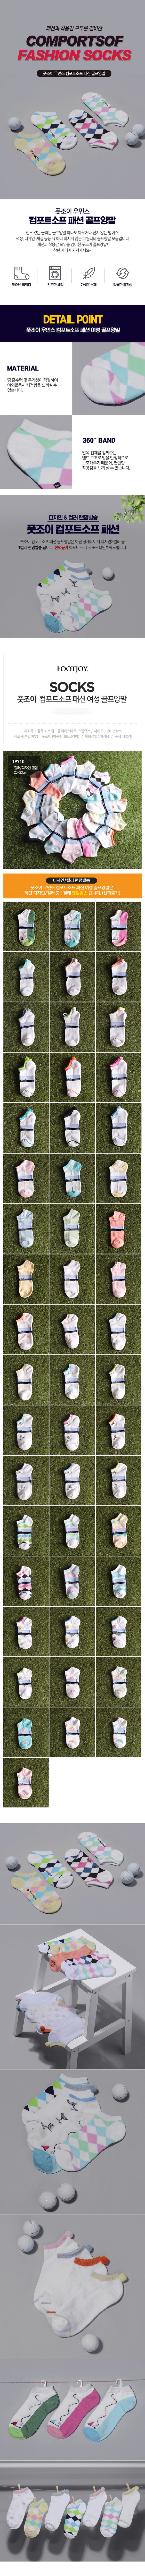 footjoy_wm_comportsof_fashion_socks.jpg